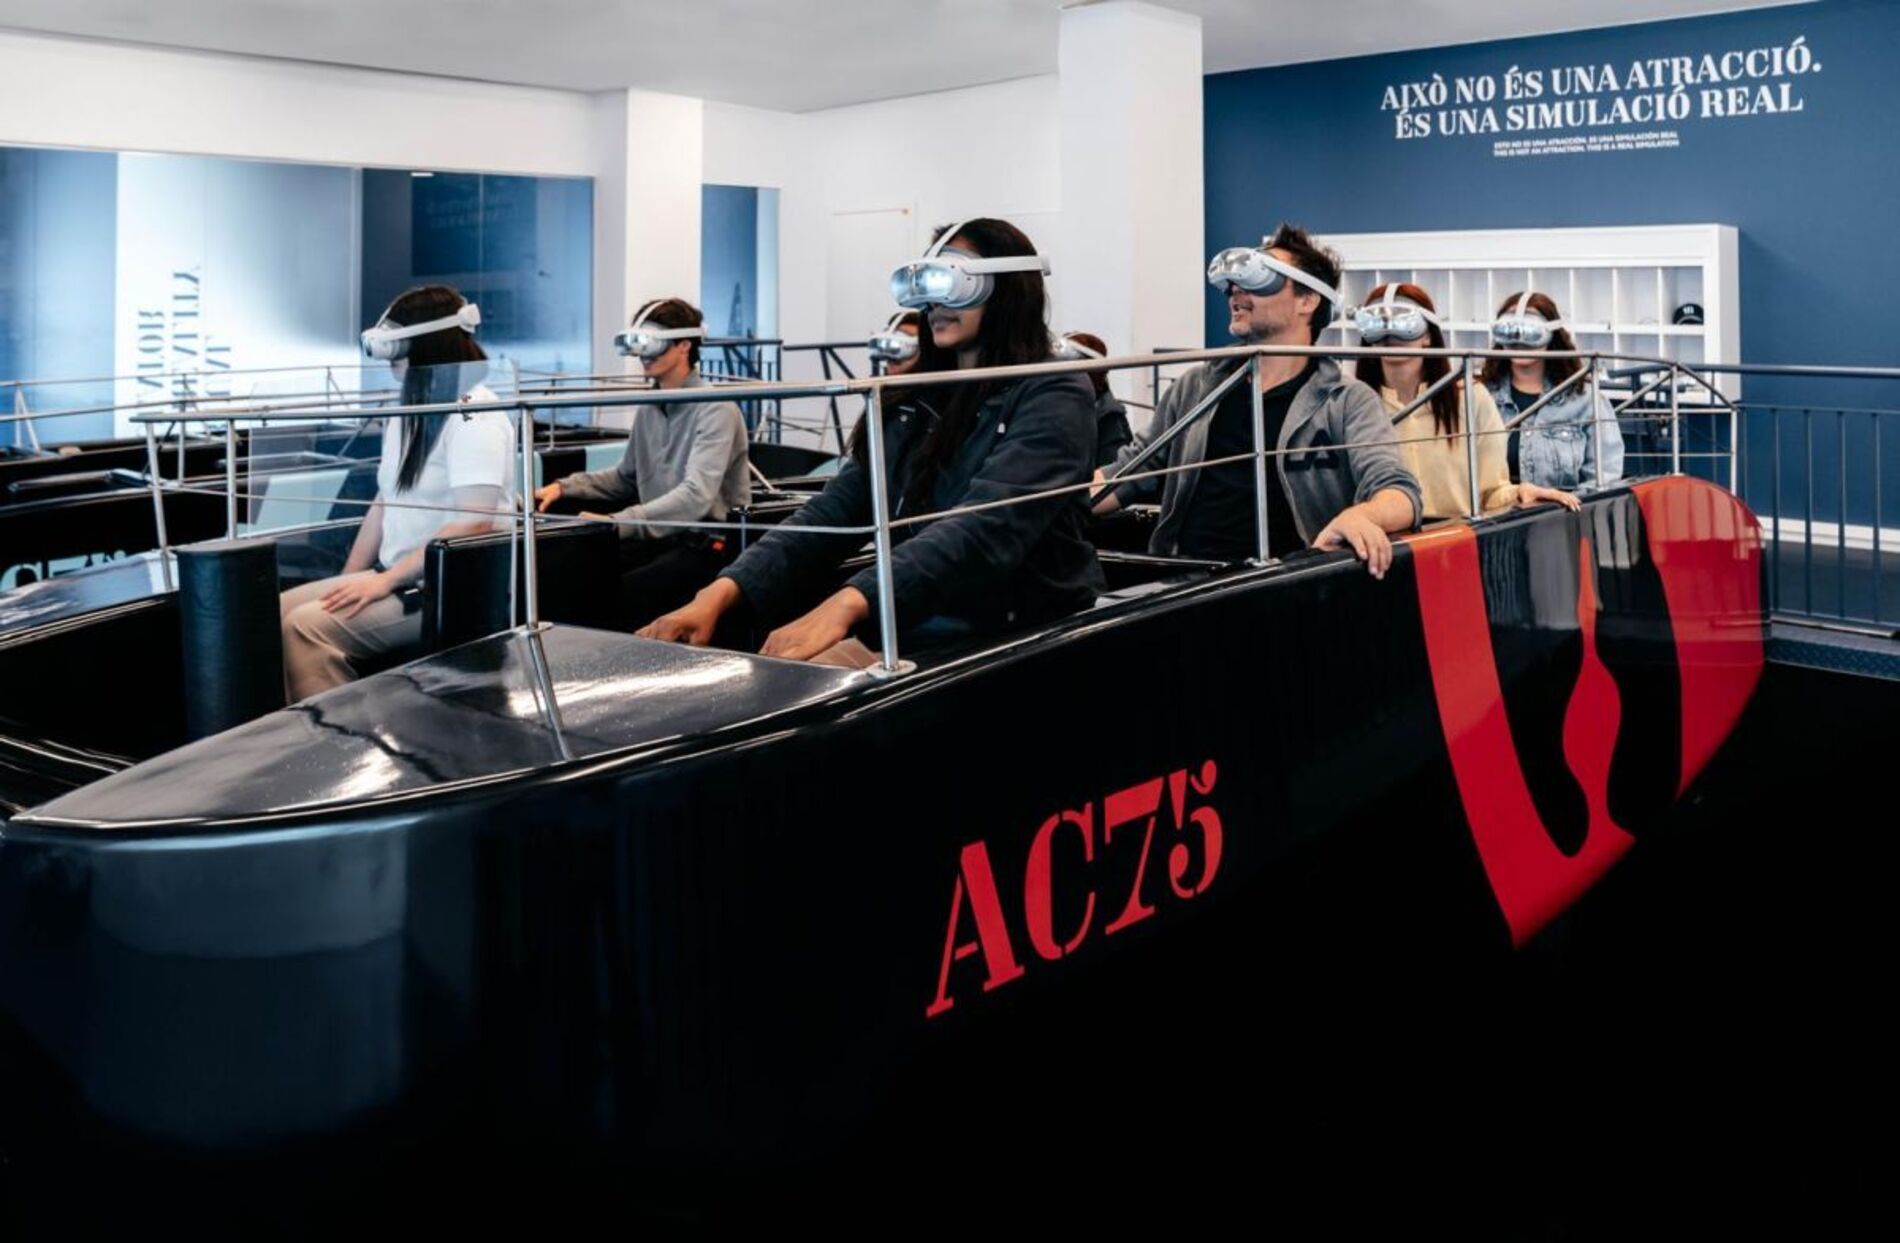 America’s Cup Experience lleva a Barcelona el simulador de AC75, el “Fórmula 1 del mar”